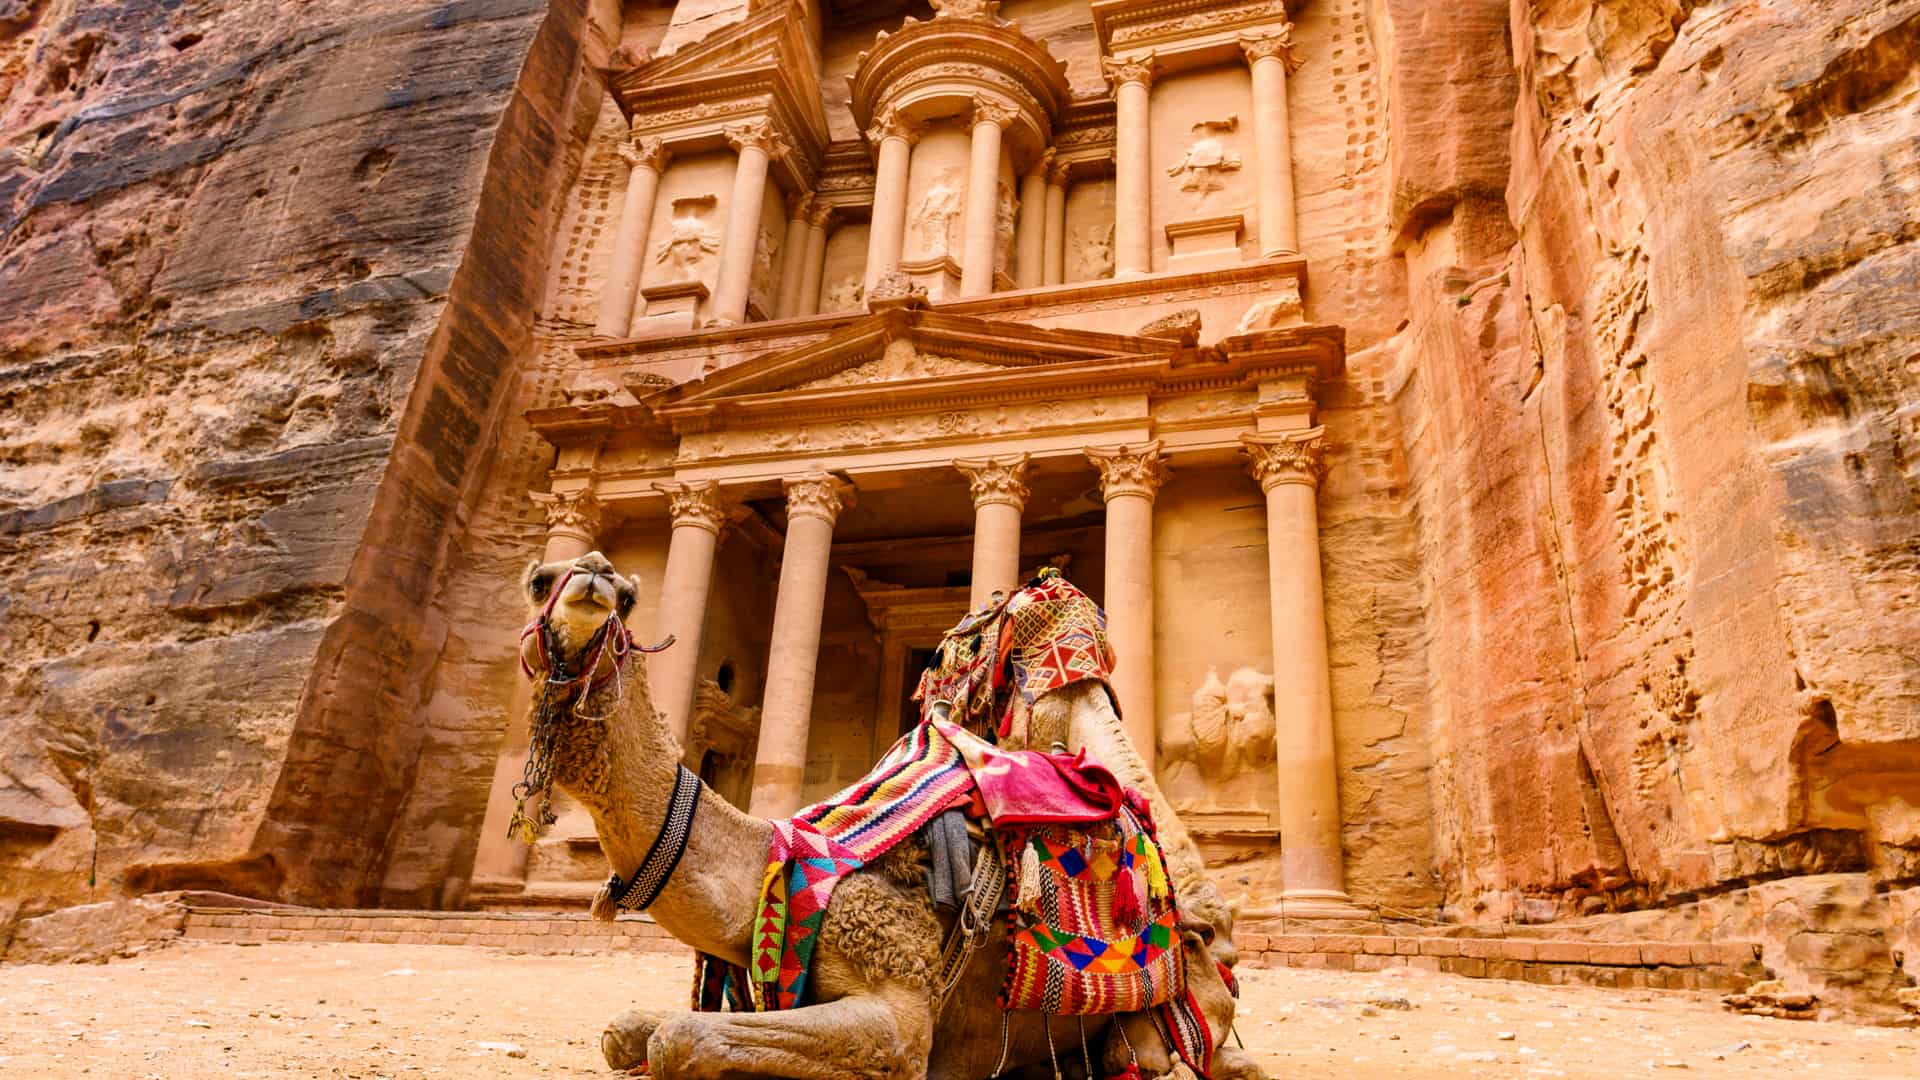 Camello frente a Khazneh en la ciudad de Petra perteneciente a Jordania, lugar para el cual se puede contratar un seguro de viaje